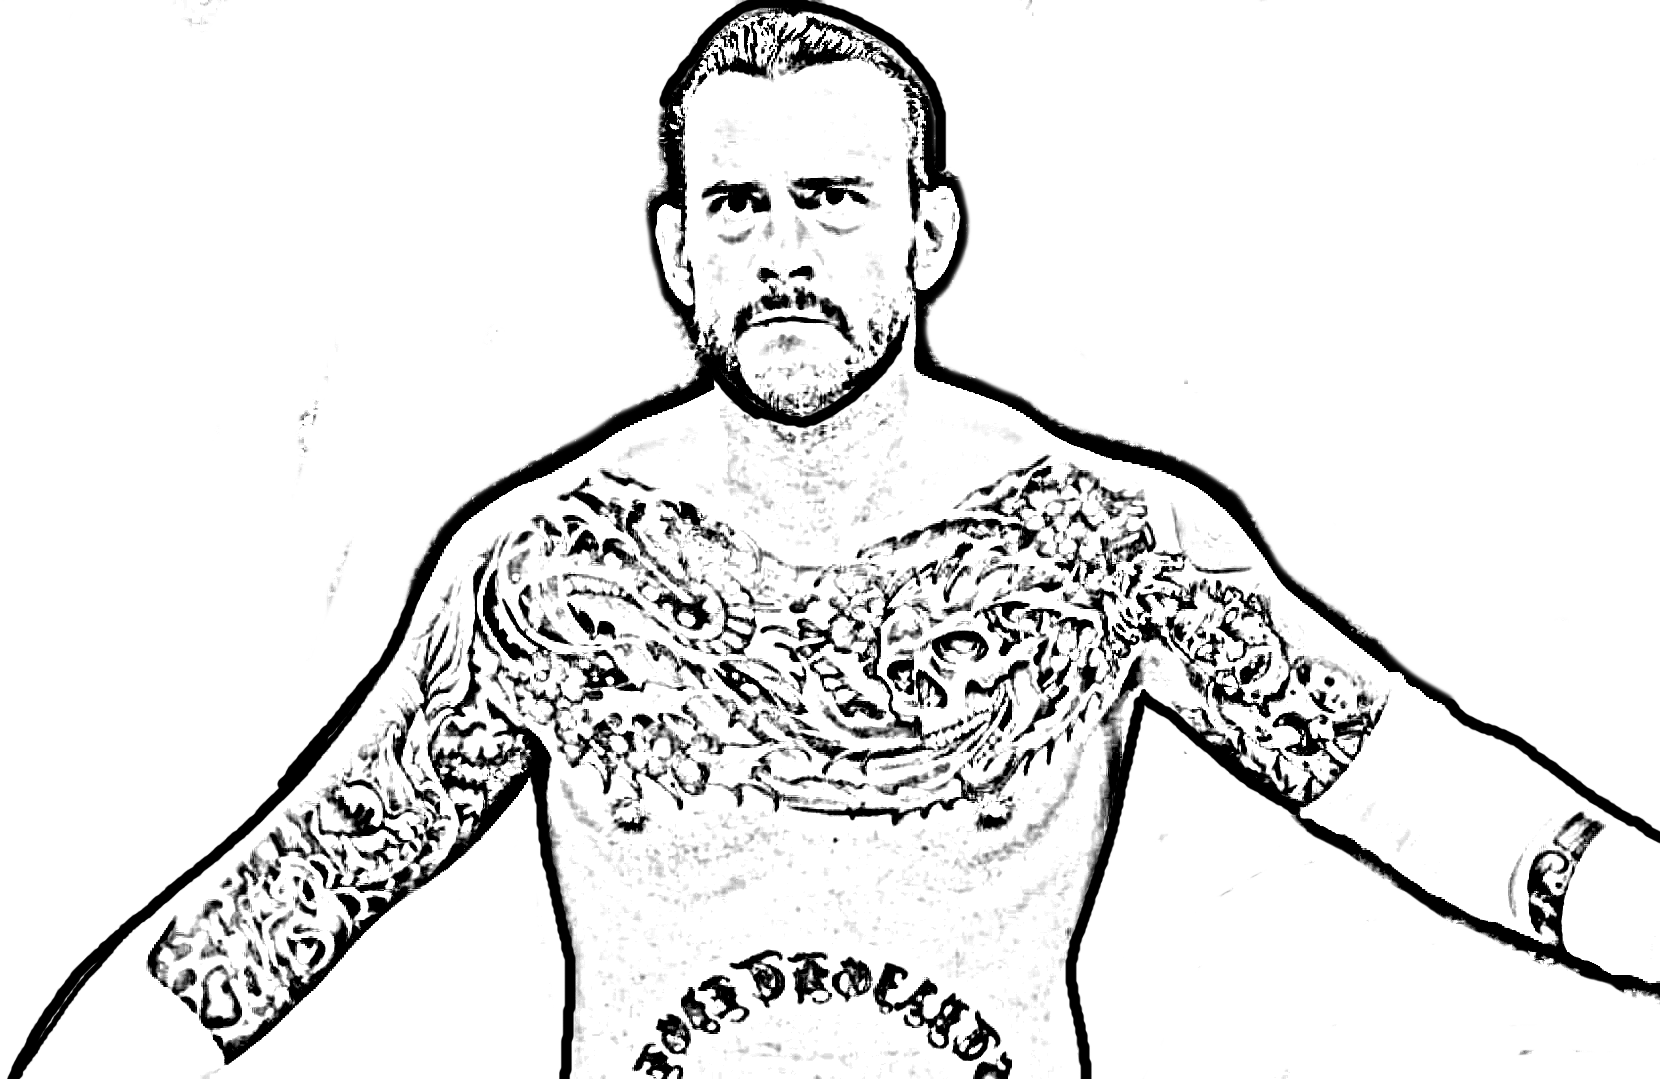 Dibujo de CM Punk de WWE (World Wrestling Entertainment) para imprimir y colorear